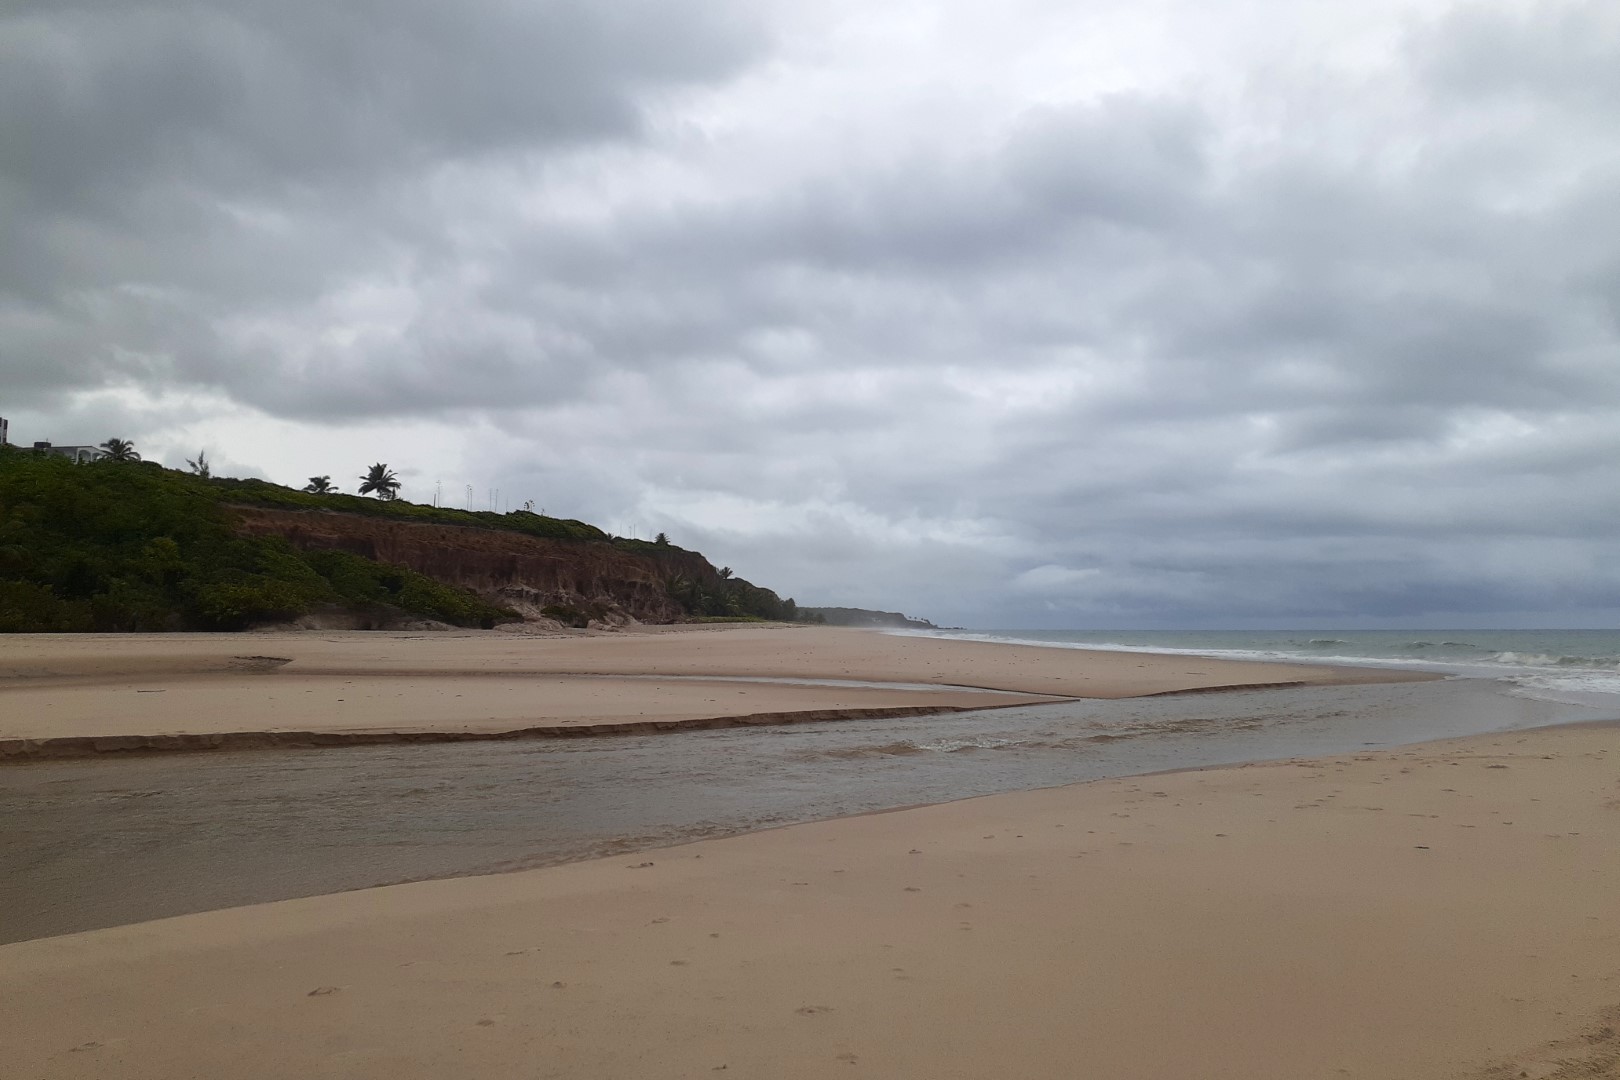 Praia Bela, Pitimbu - State of Paraíba